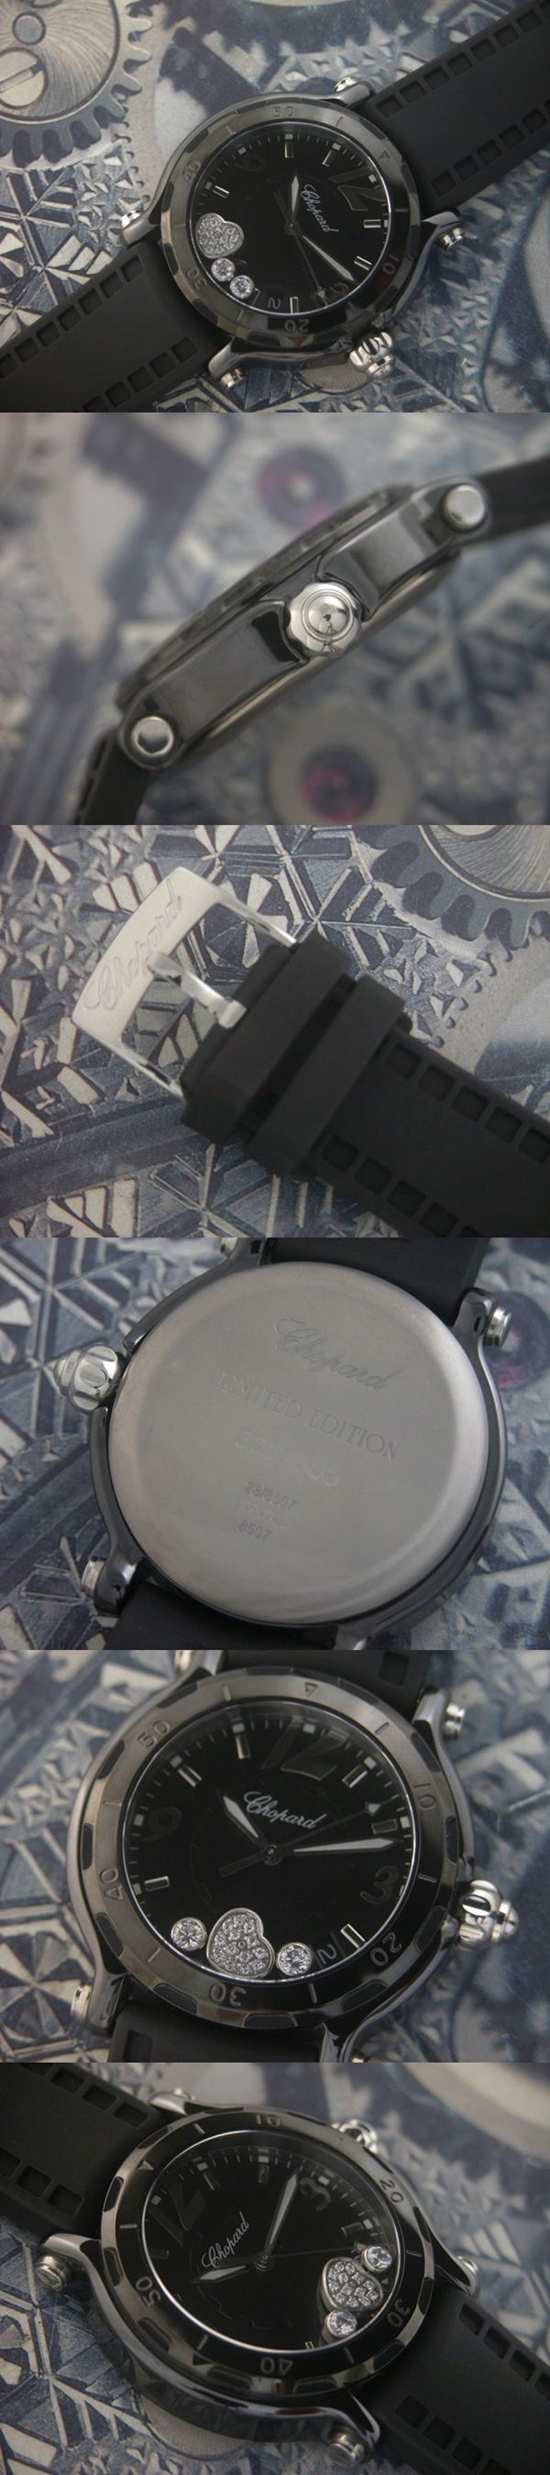 おしゃれなブランド時計がショパール-CHOPARD-ラ ストラーダ-CH00007S  男性用腕時計を提供します.